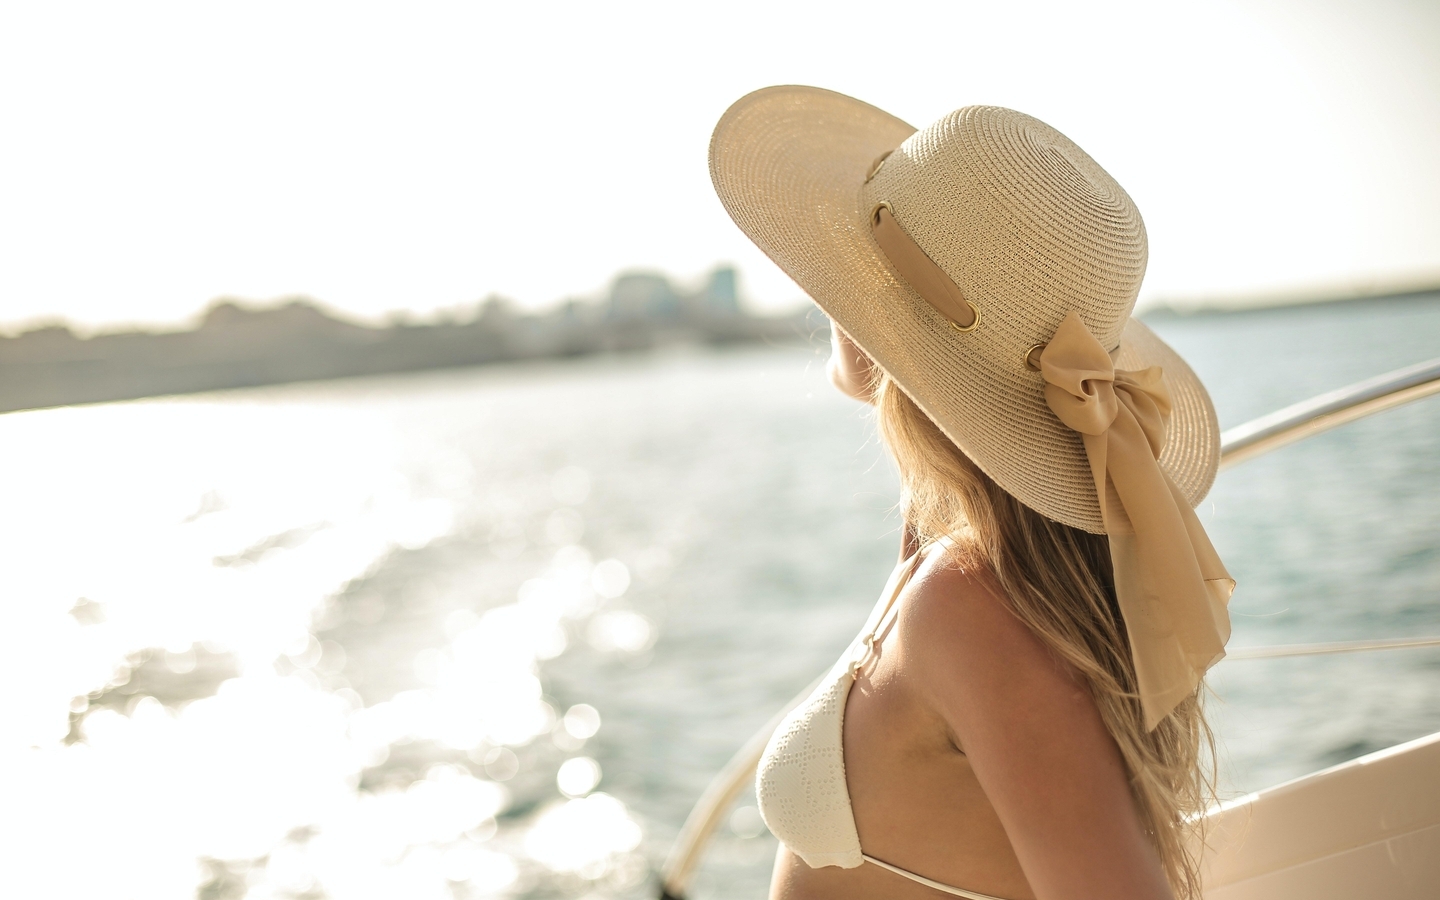 Картинка: Девушка, день, шляпа, купальник, яхта, море, размытость, горизонт